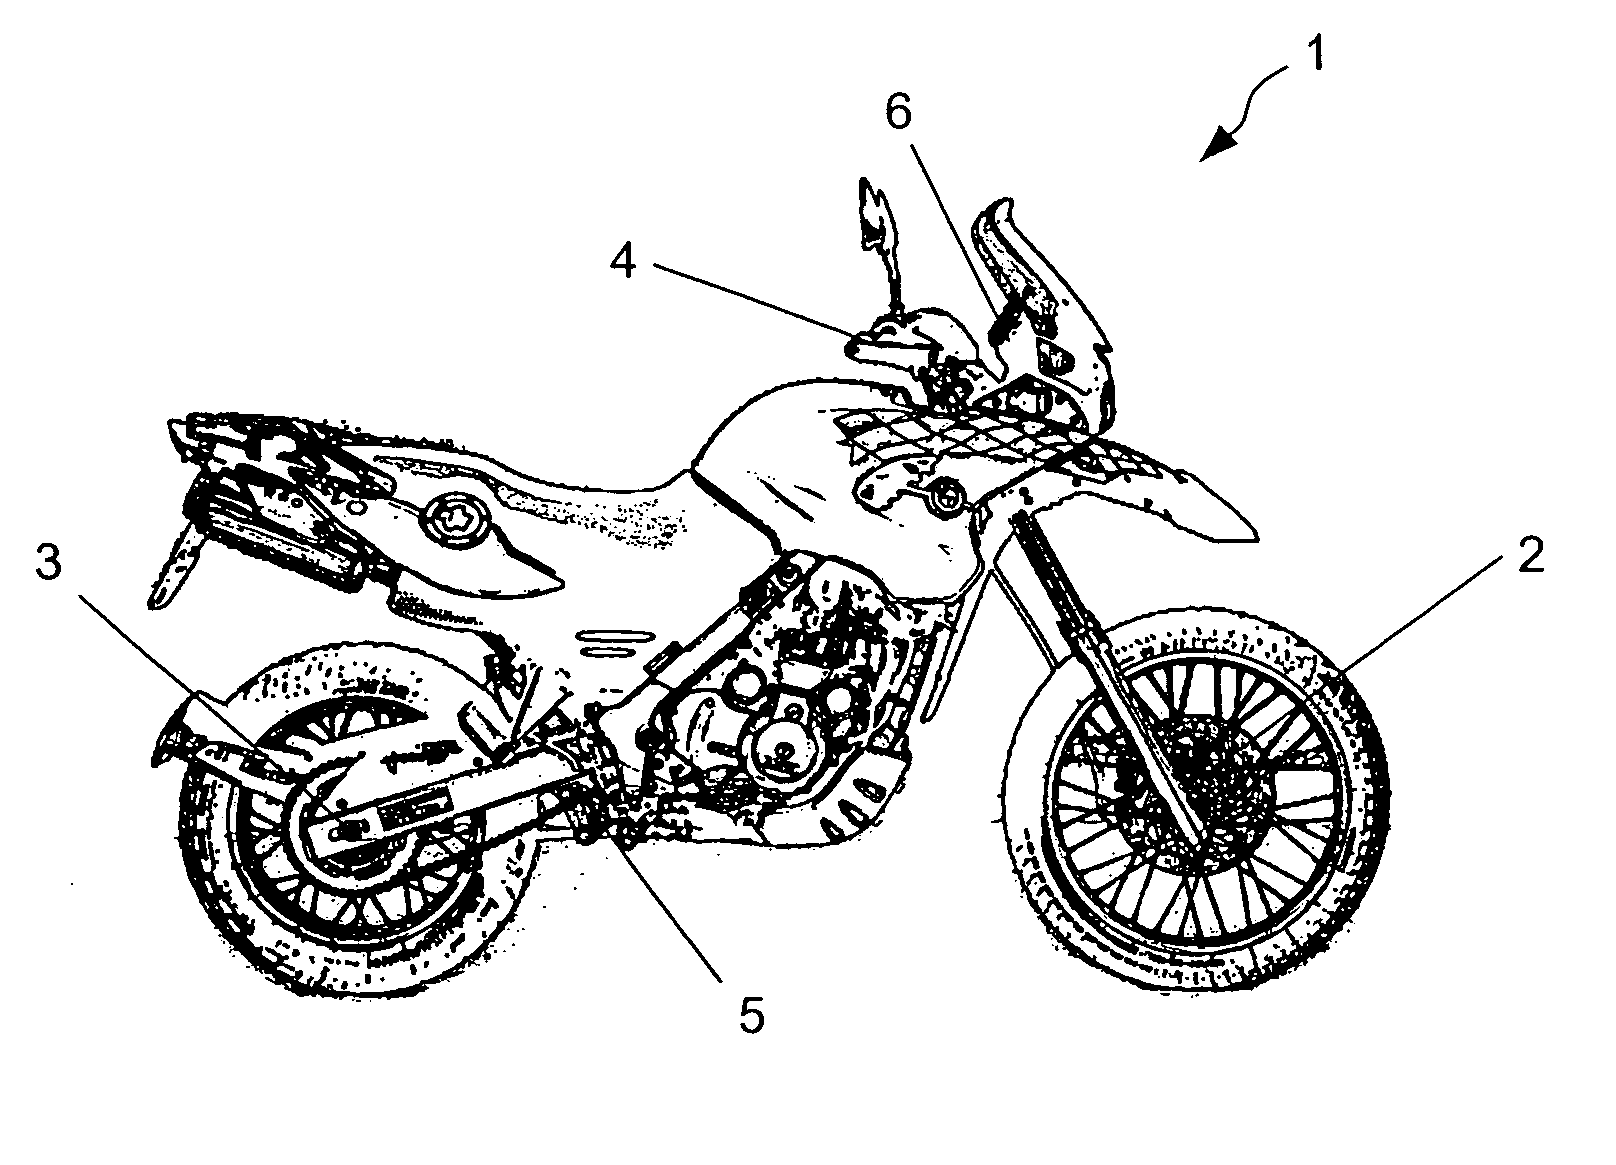 Integral brake system having antilock braking for a motorcycle